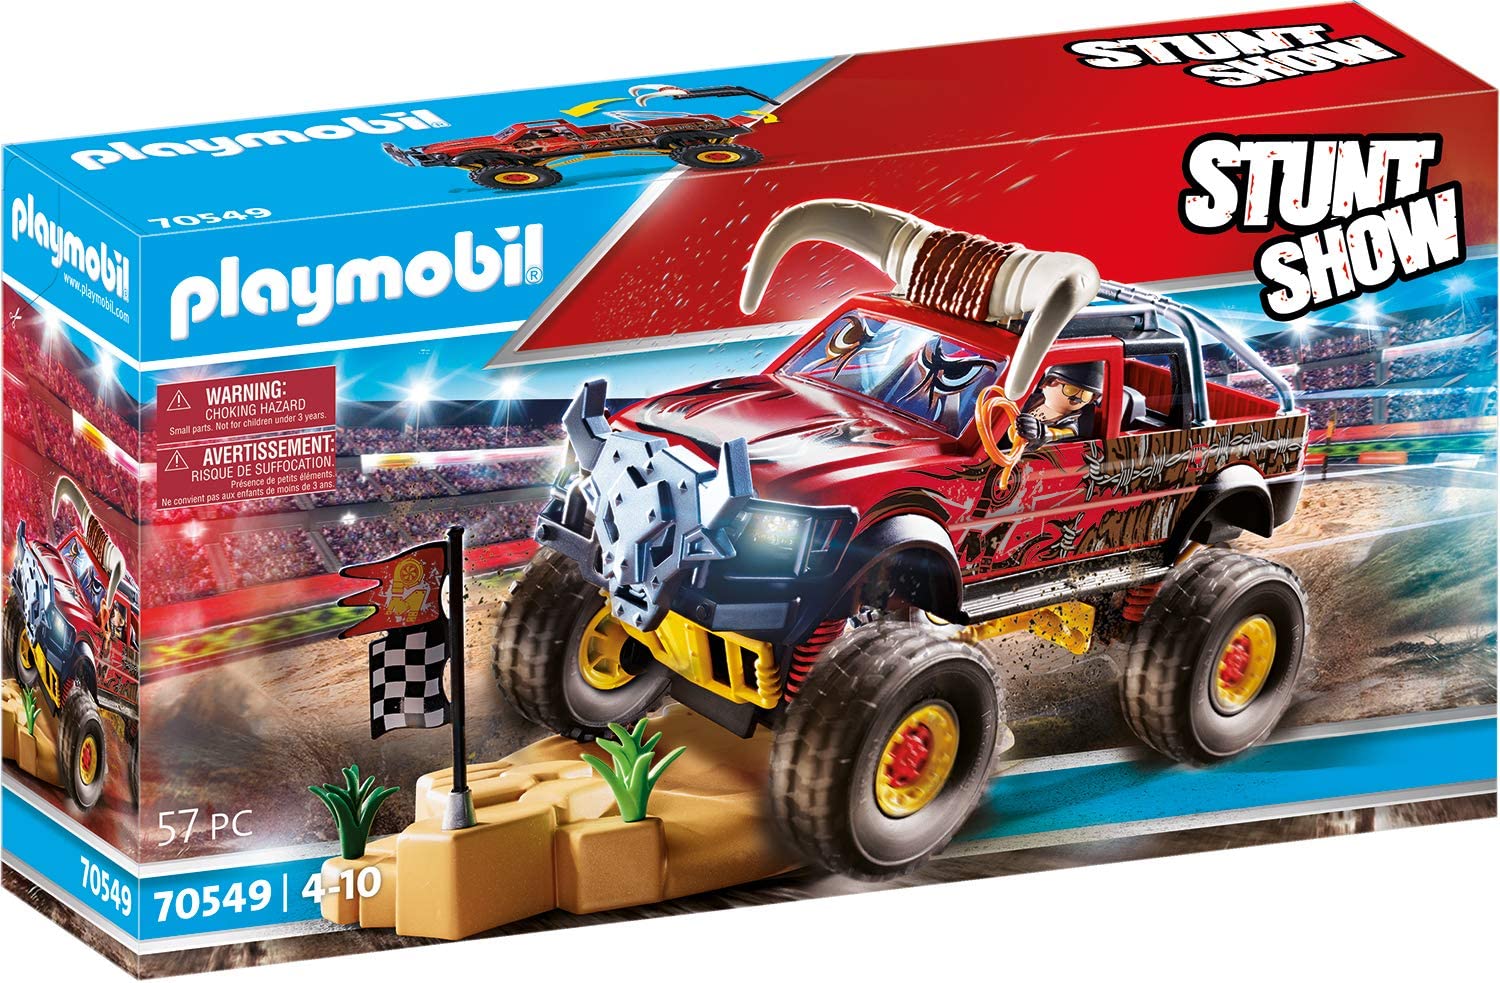 PLAYMOBIL Stuntshow 70549 Monster Truck with Bull Horns for Children Aged 4